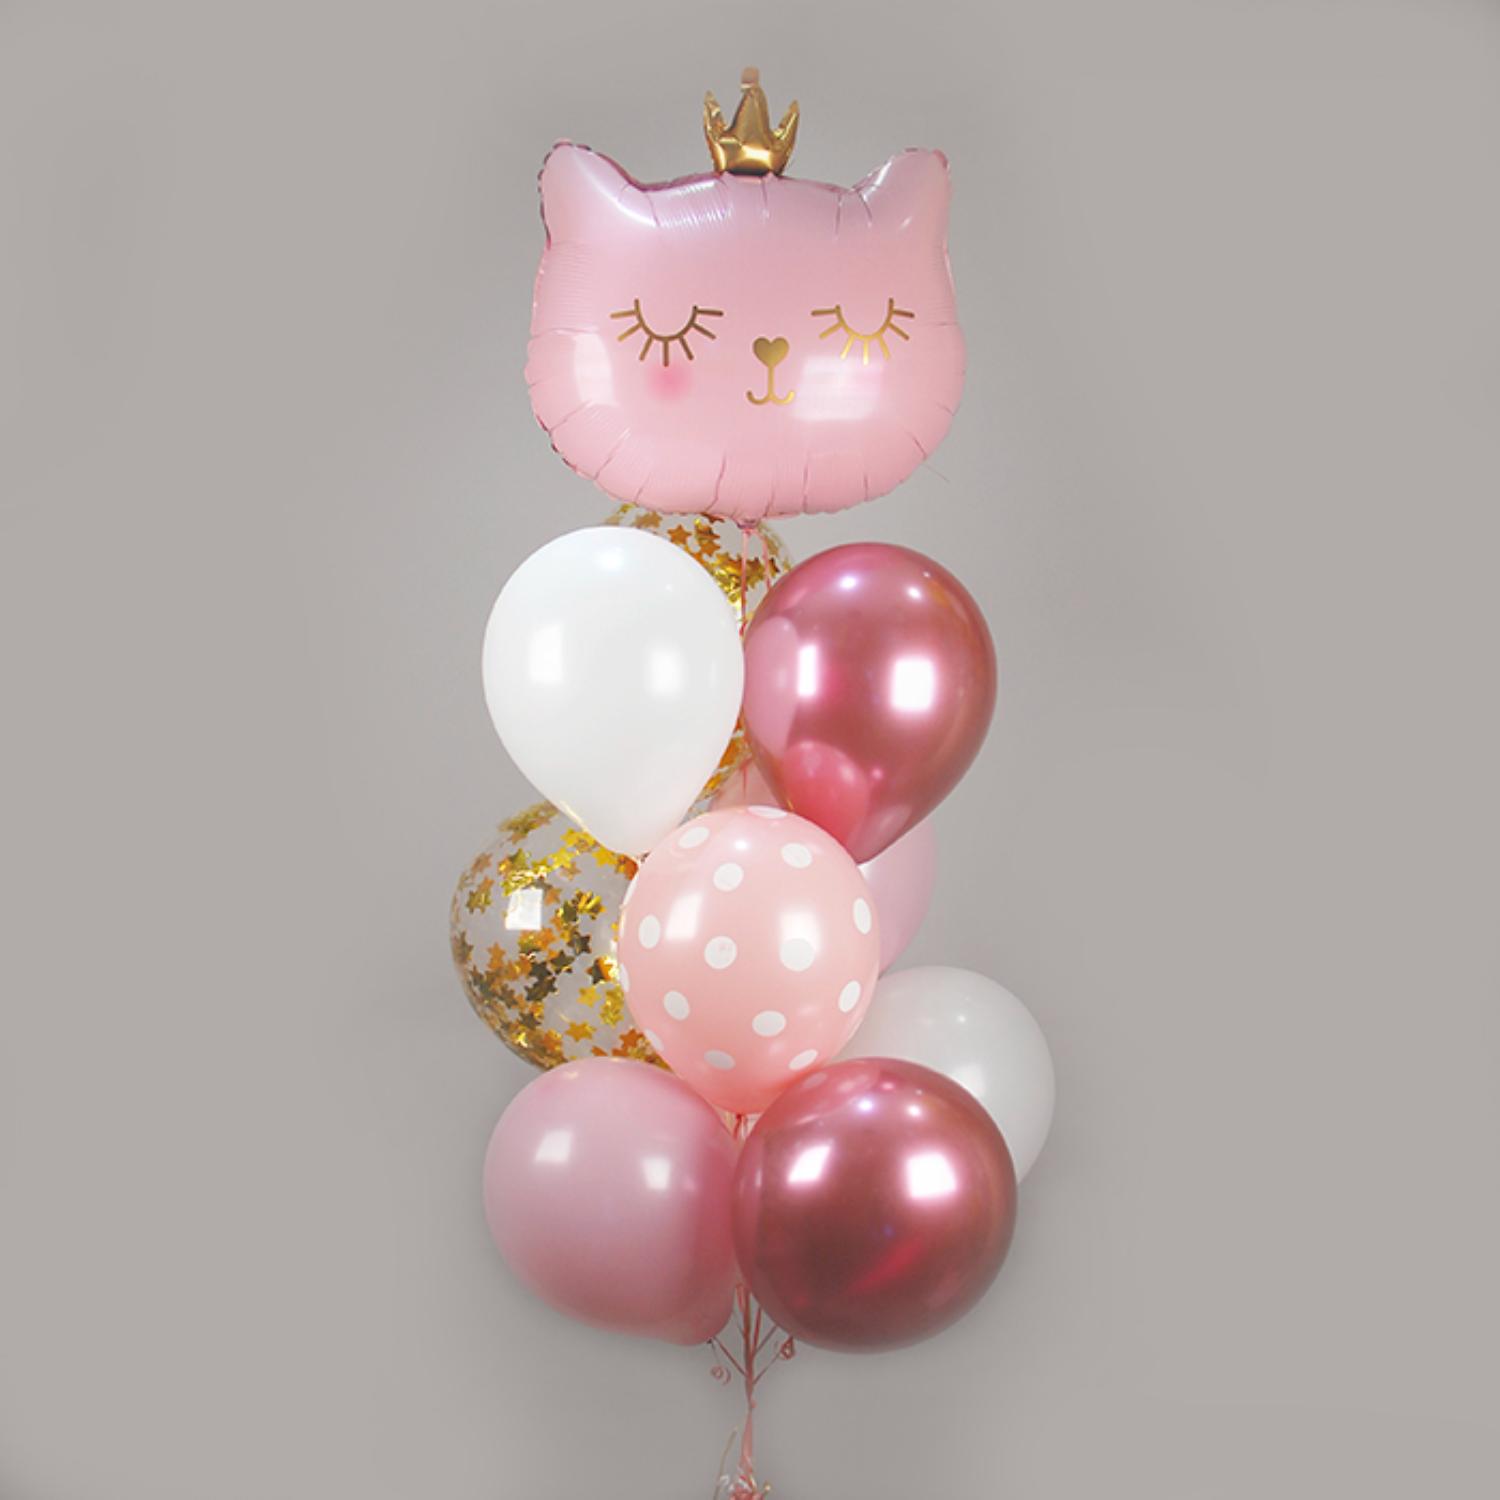 Воздушные шарики в форме кота, гелиевый шар котик, фигура кошки из воздушных шариков